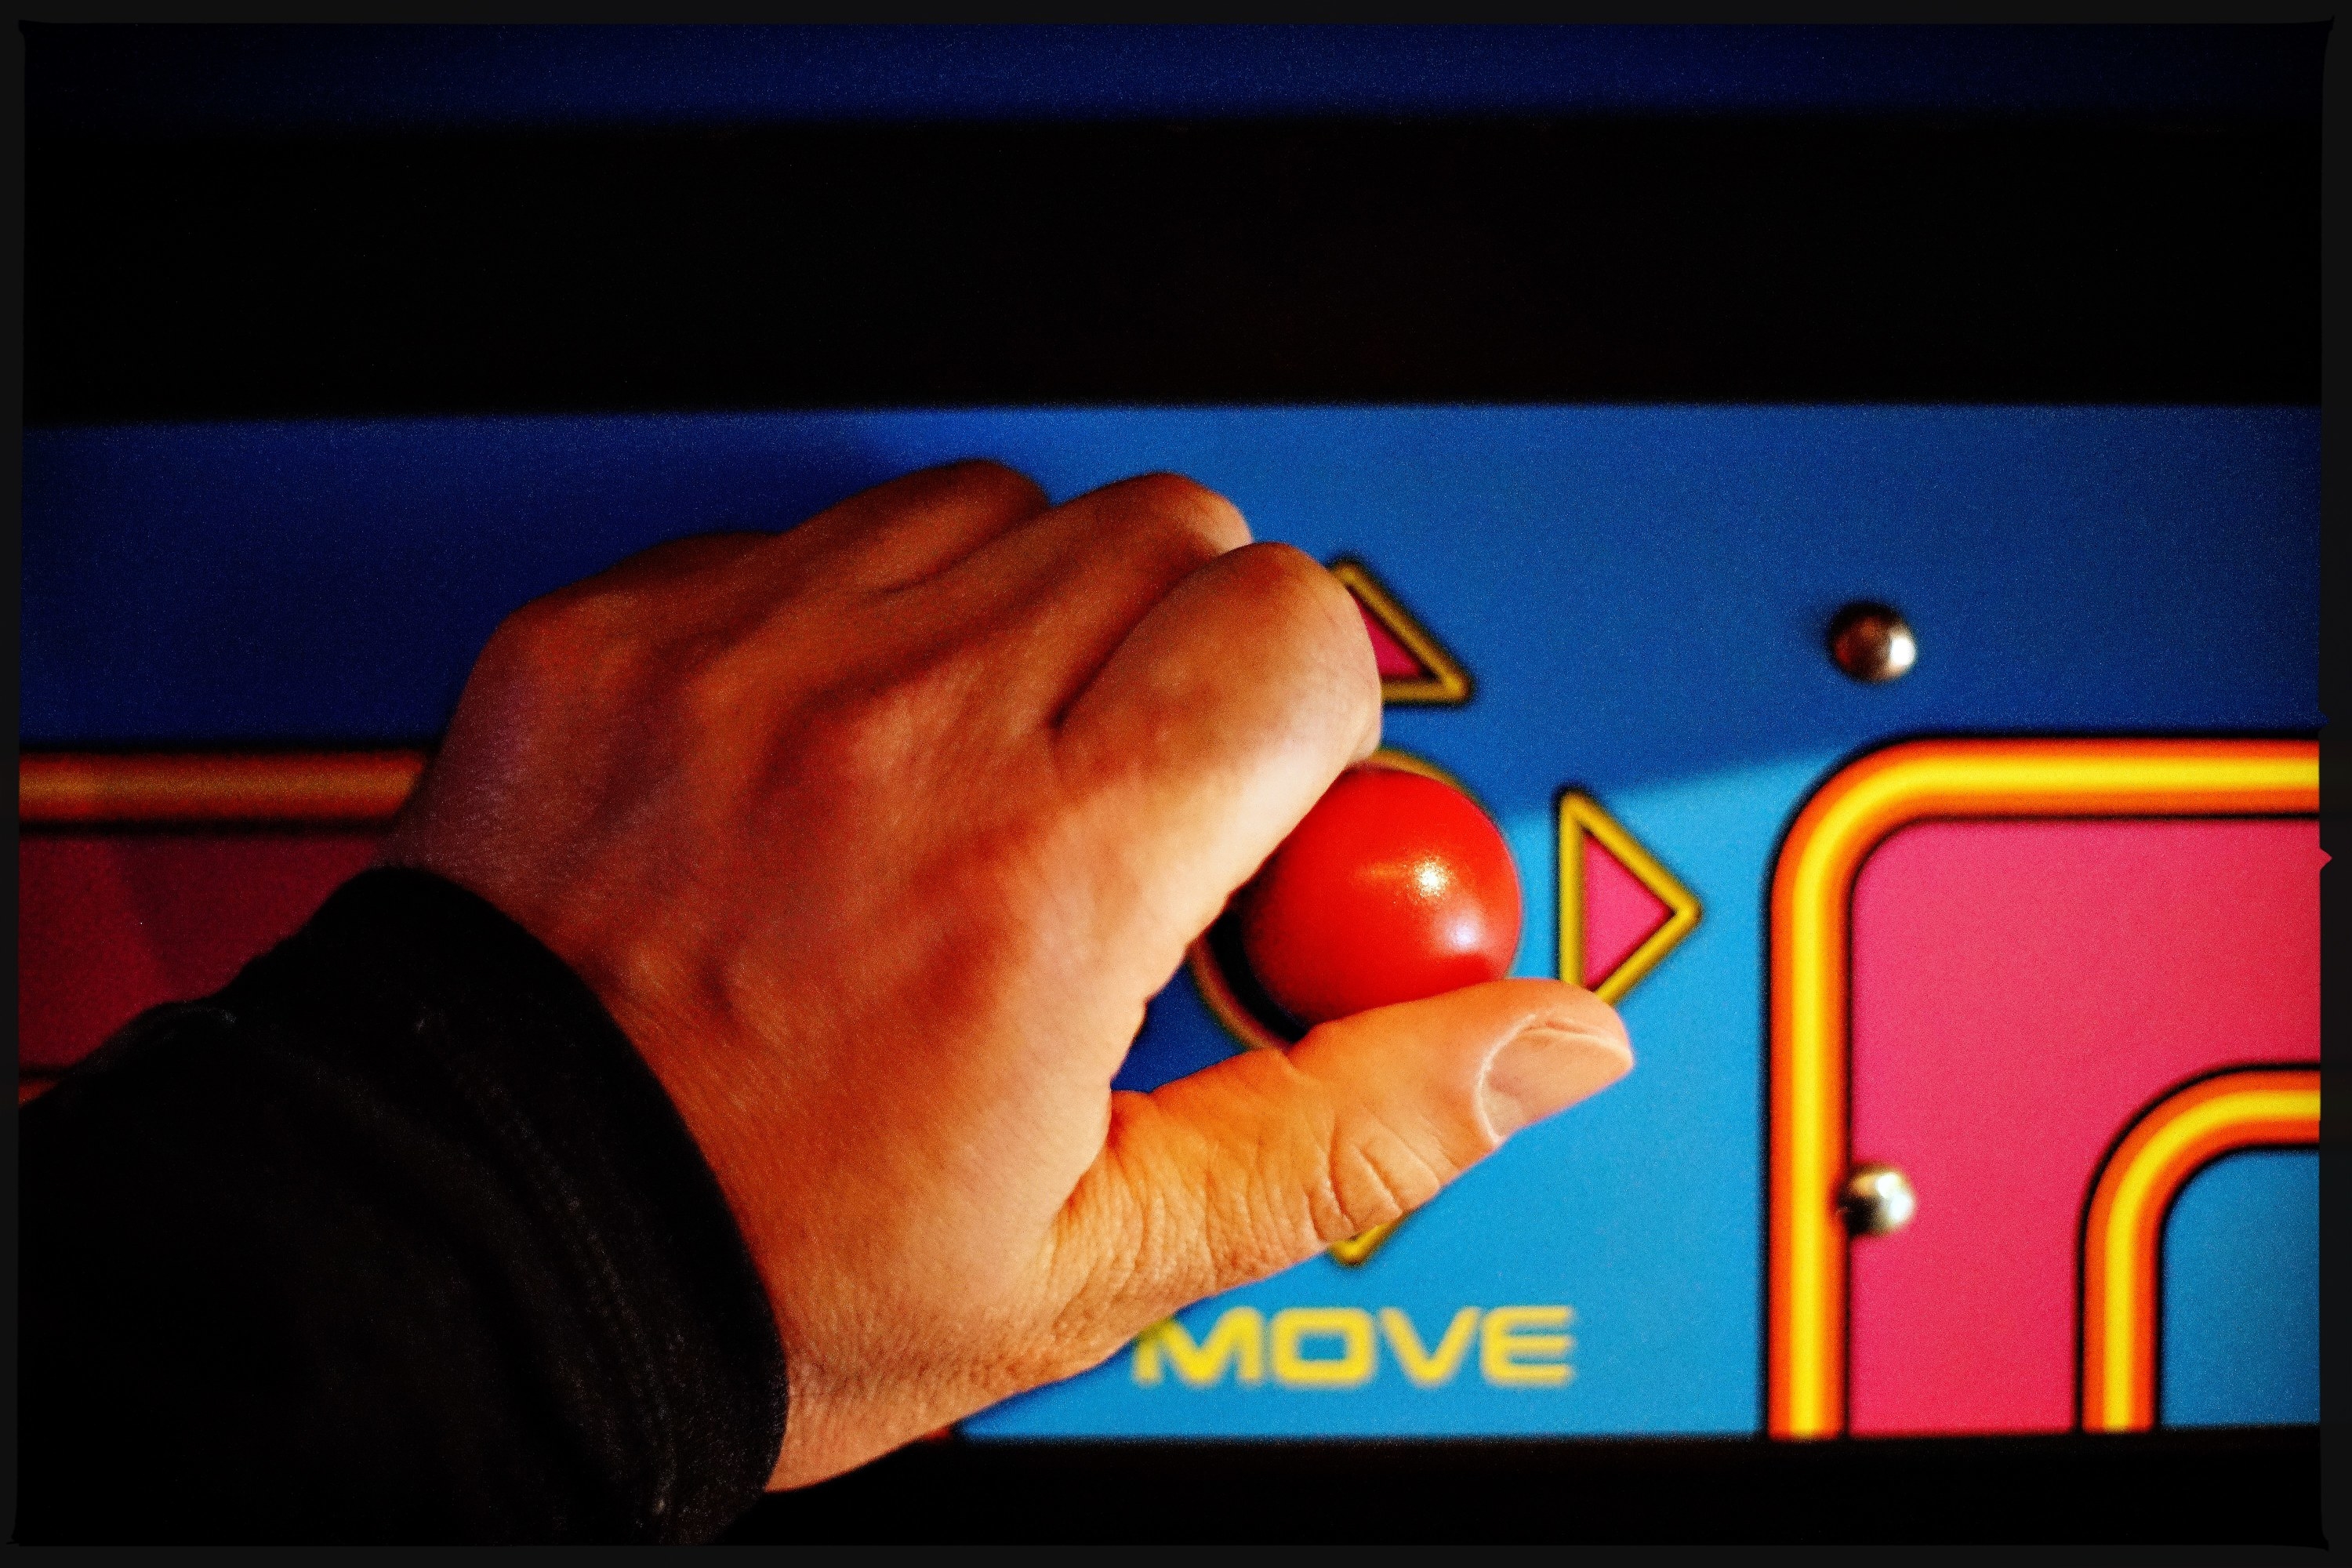 hand on an arcade joystick